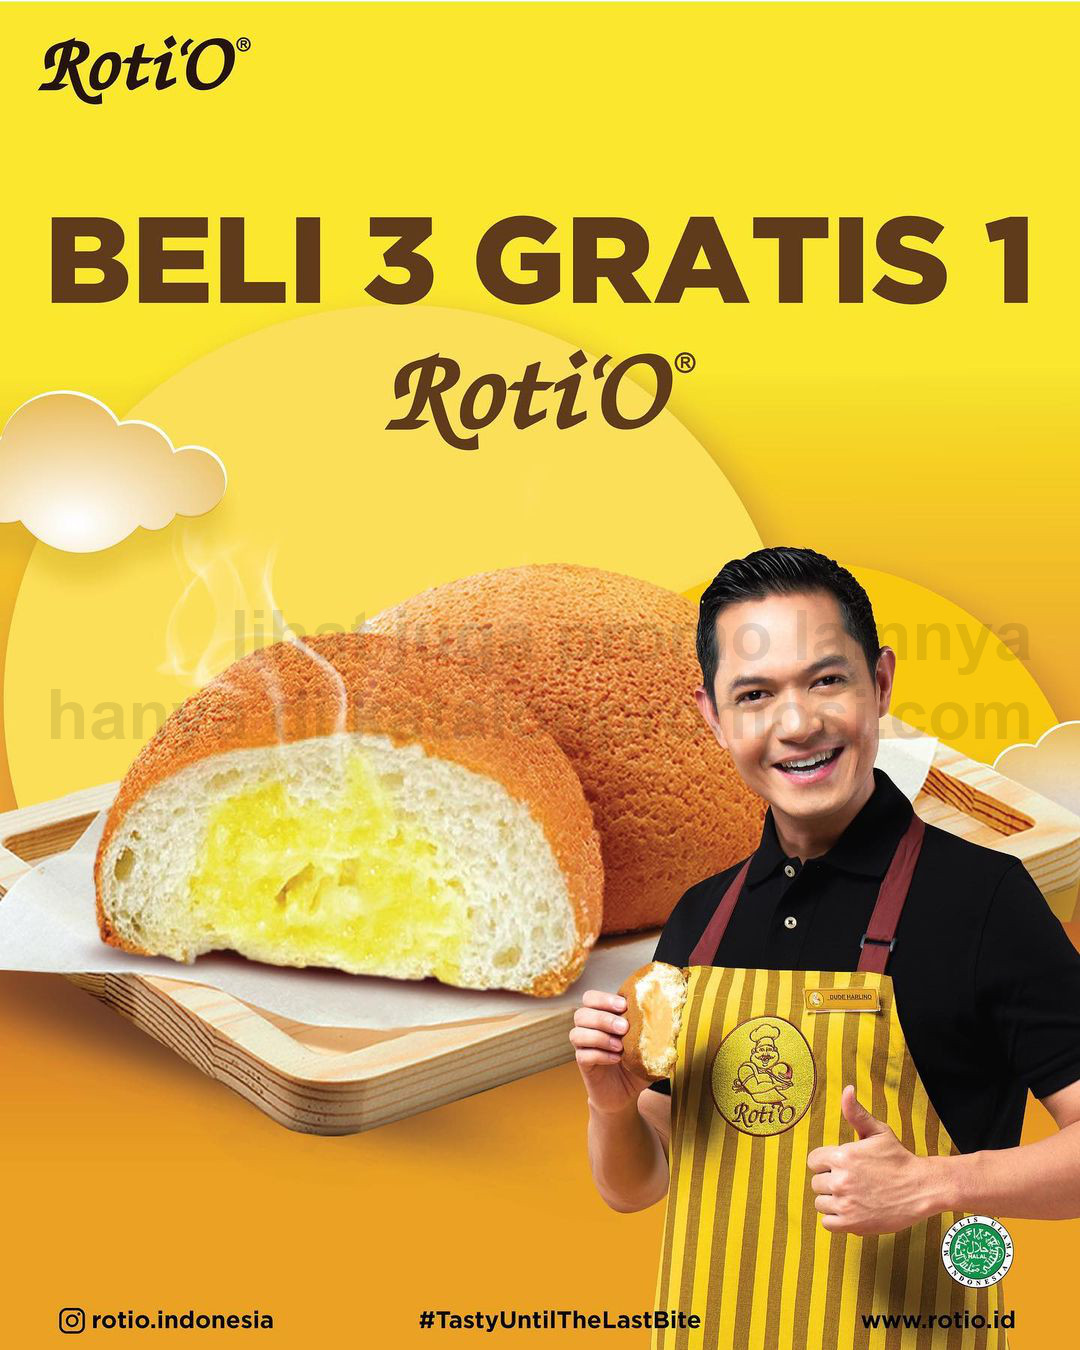 Promo ROTI'O - BELI 3 GRATIS 1 untuk ROTI dan HARGA SPESIAL untuk KOPI'O